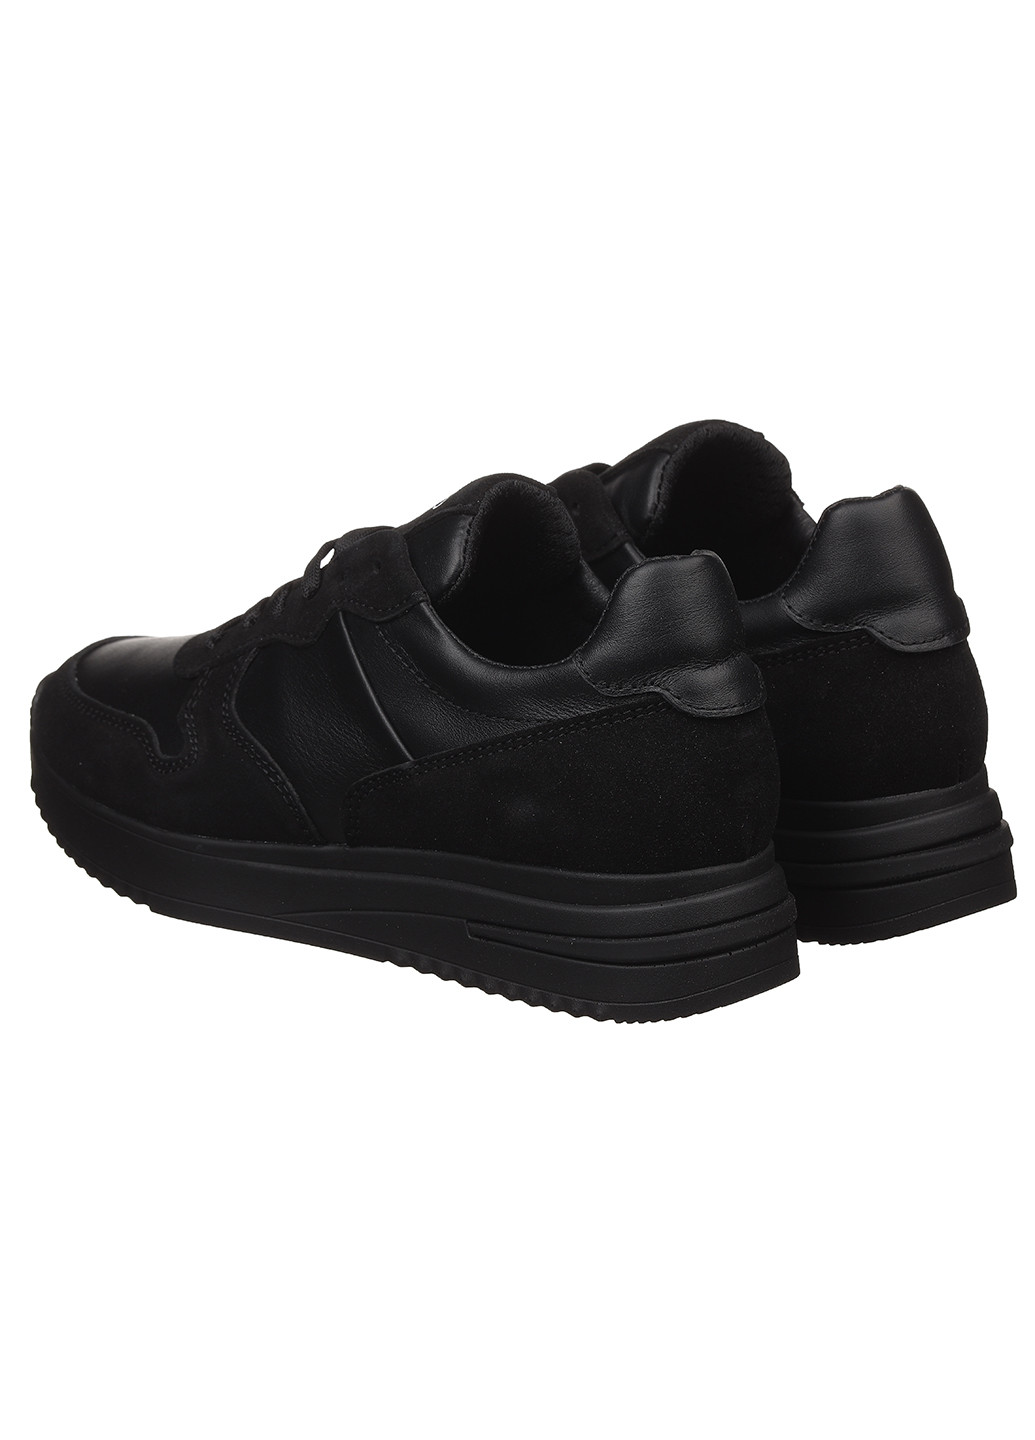 Чорні осінні жіночі кросівки 10231-01 Best Vak